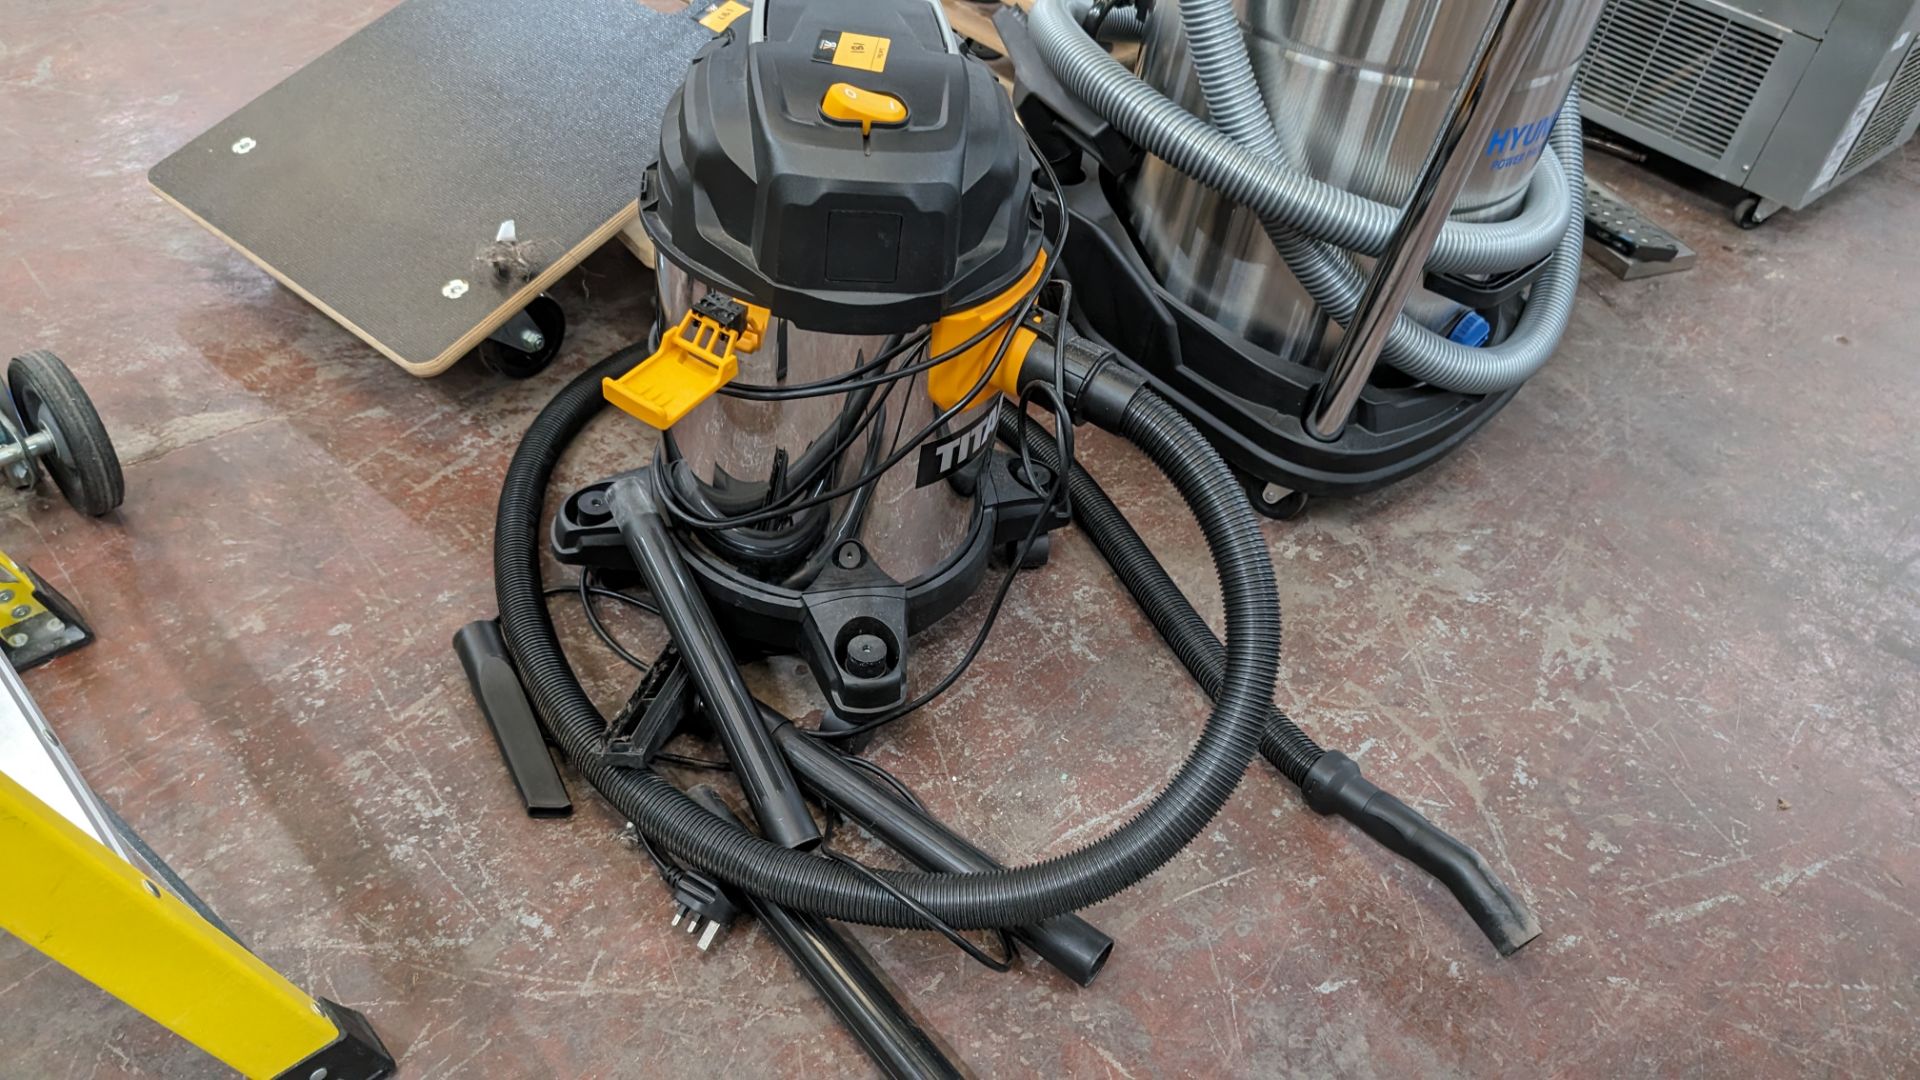 Titan TTB775VAC wet and dry 1400w vacuum cleaner - Image 4 of 8